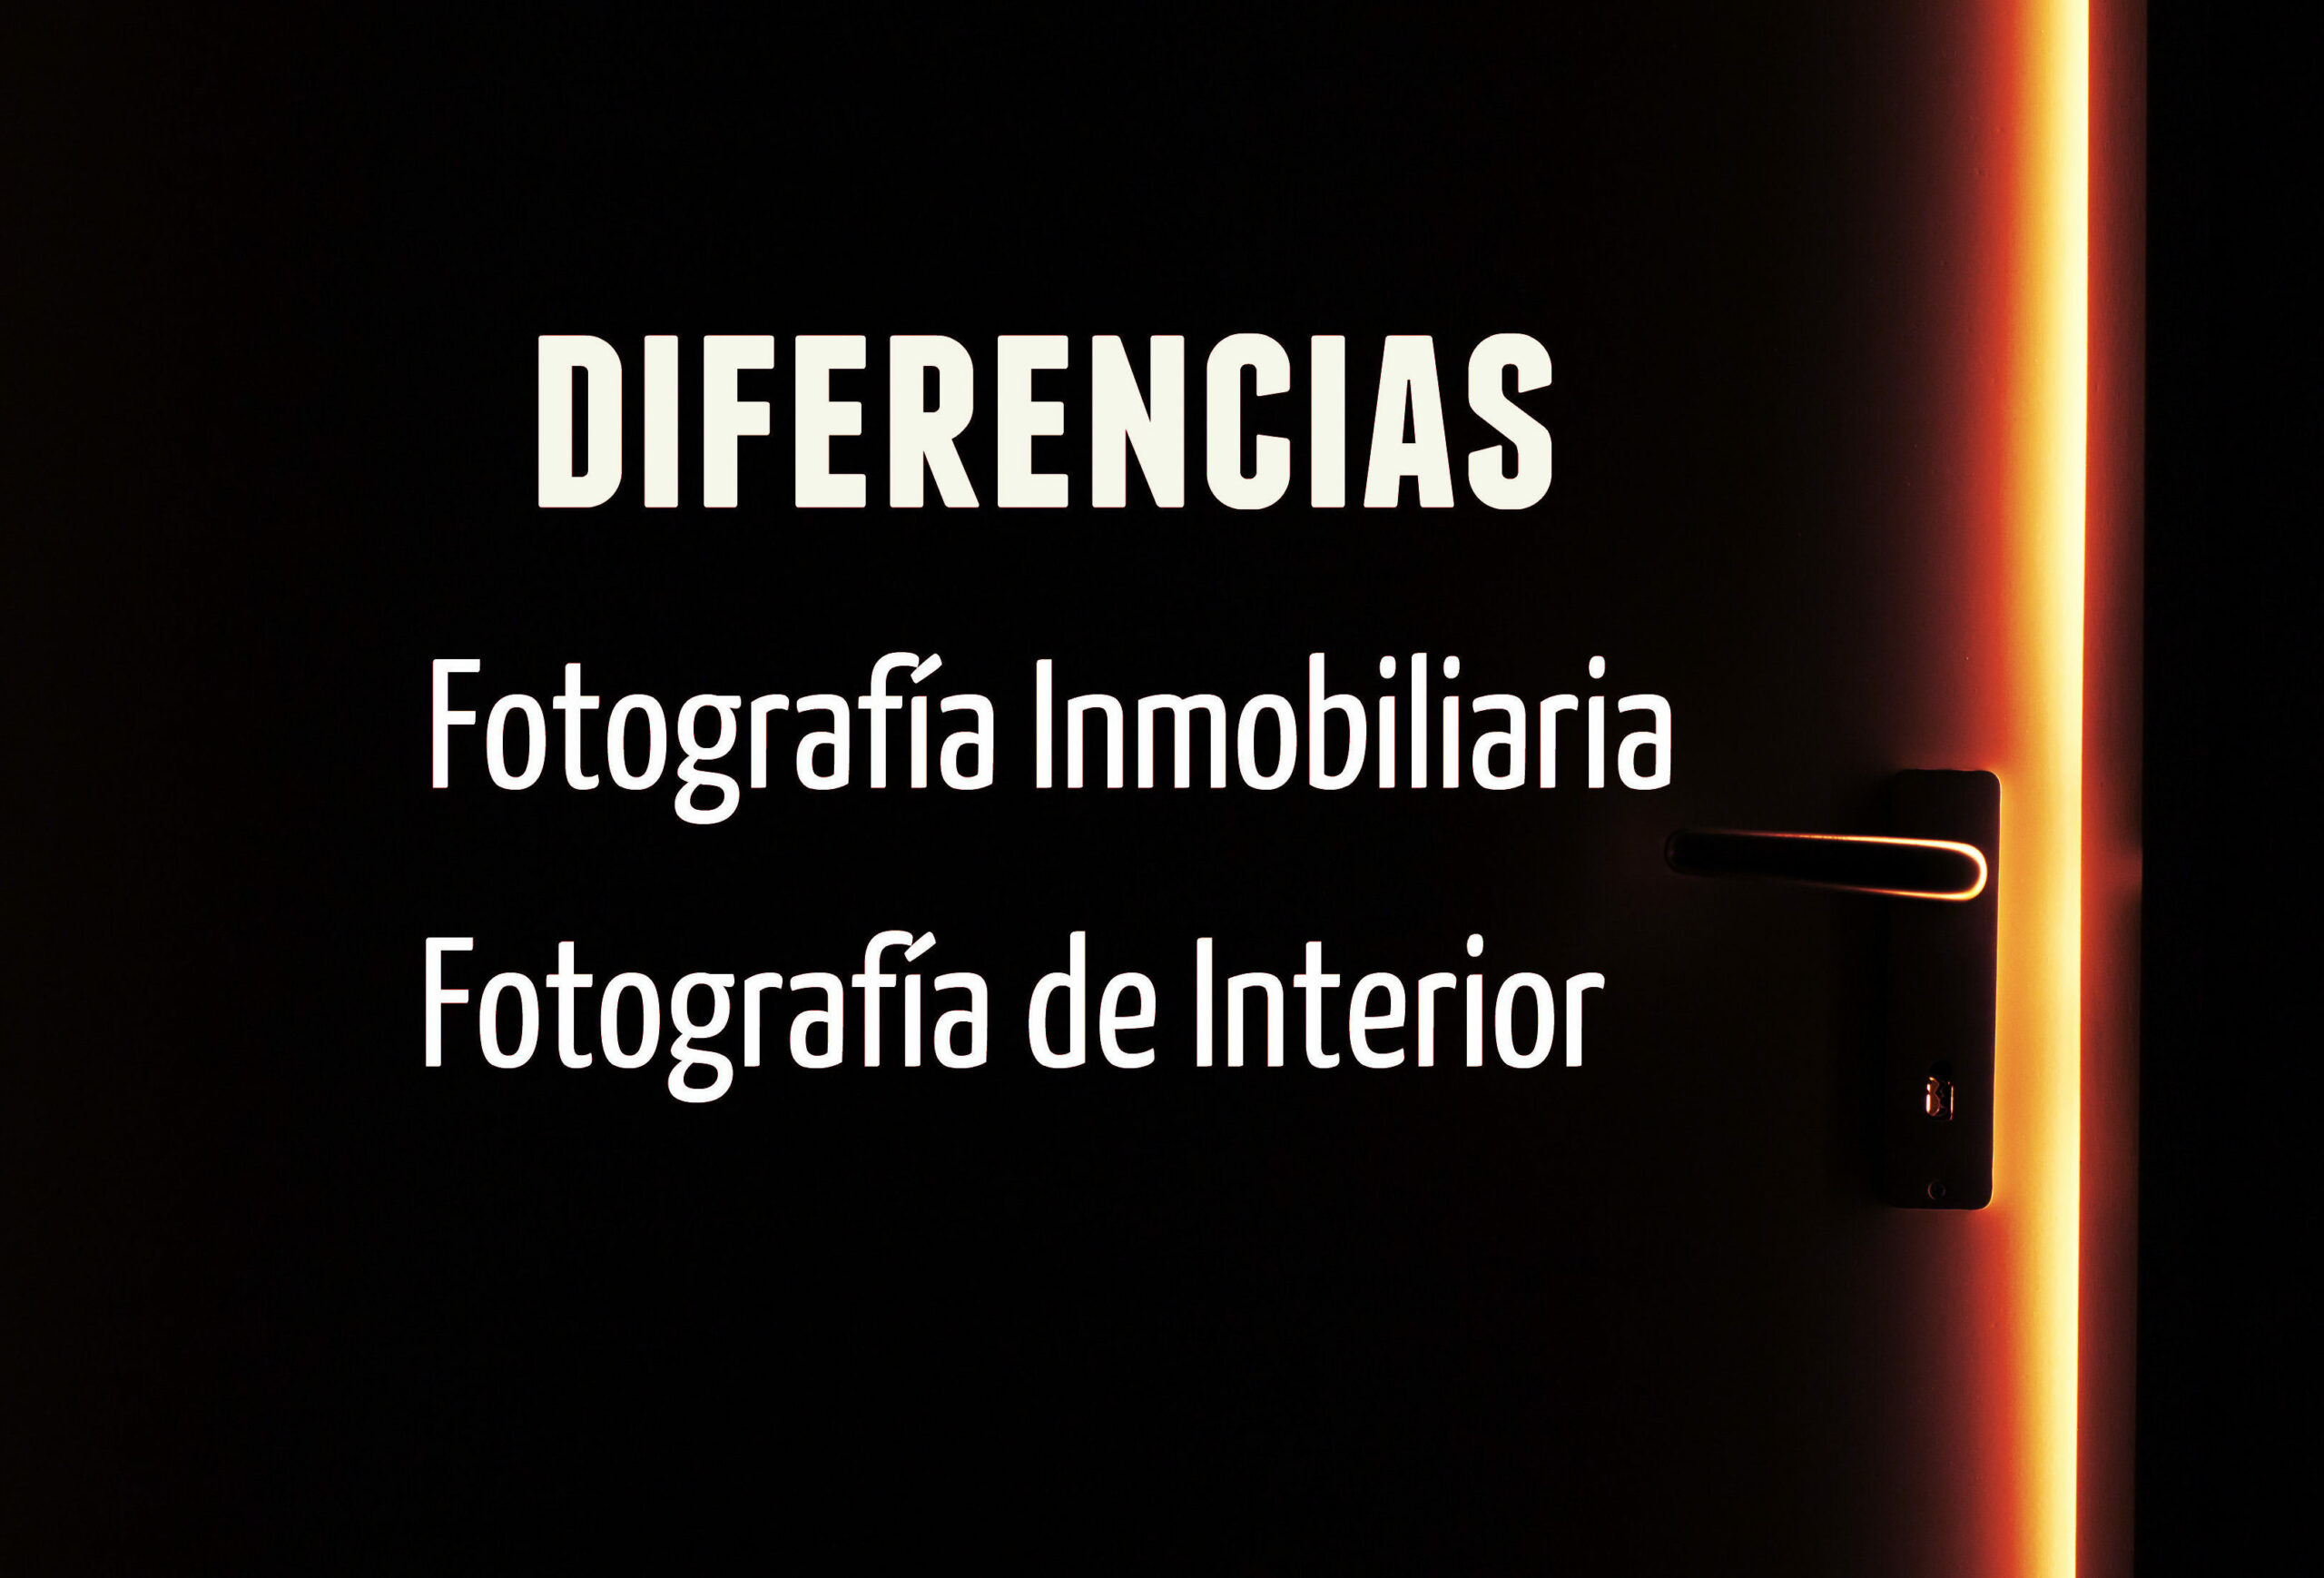 Diferencias Fotografia Inmobiliaria y Fotografia de Interior